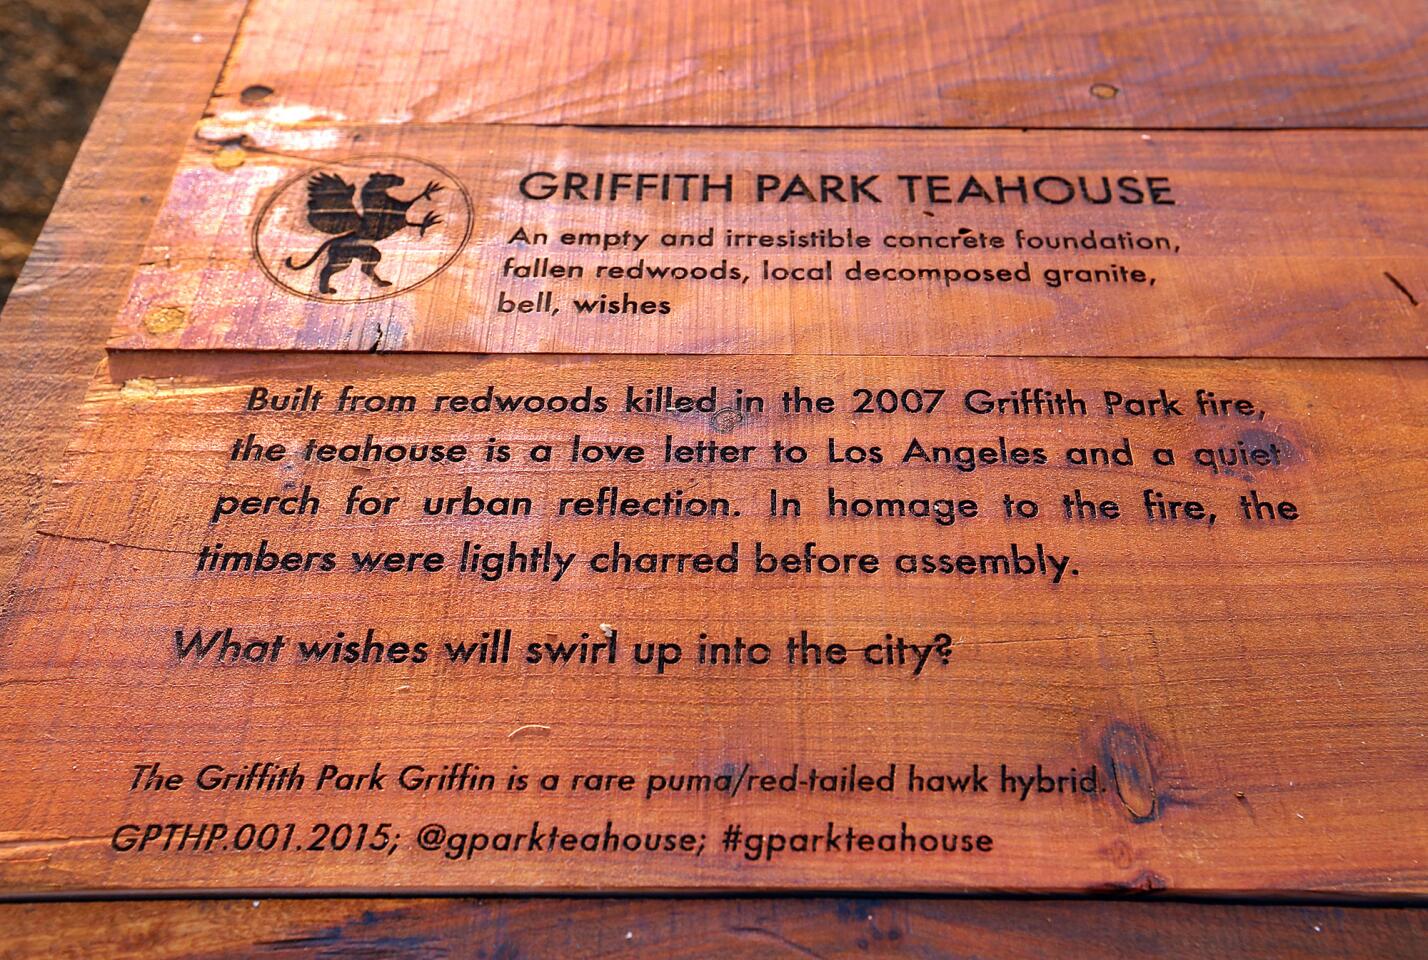 The Griffith Park Teahouse